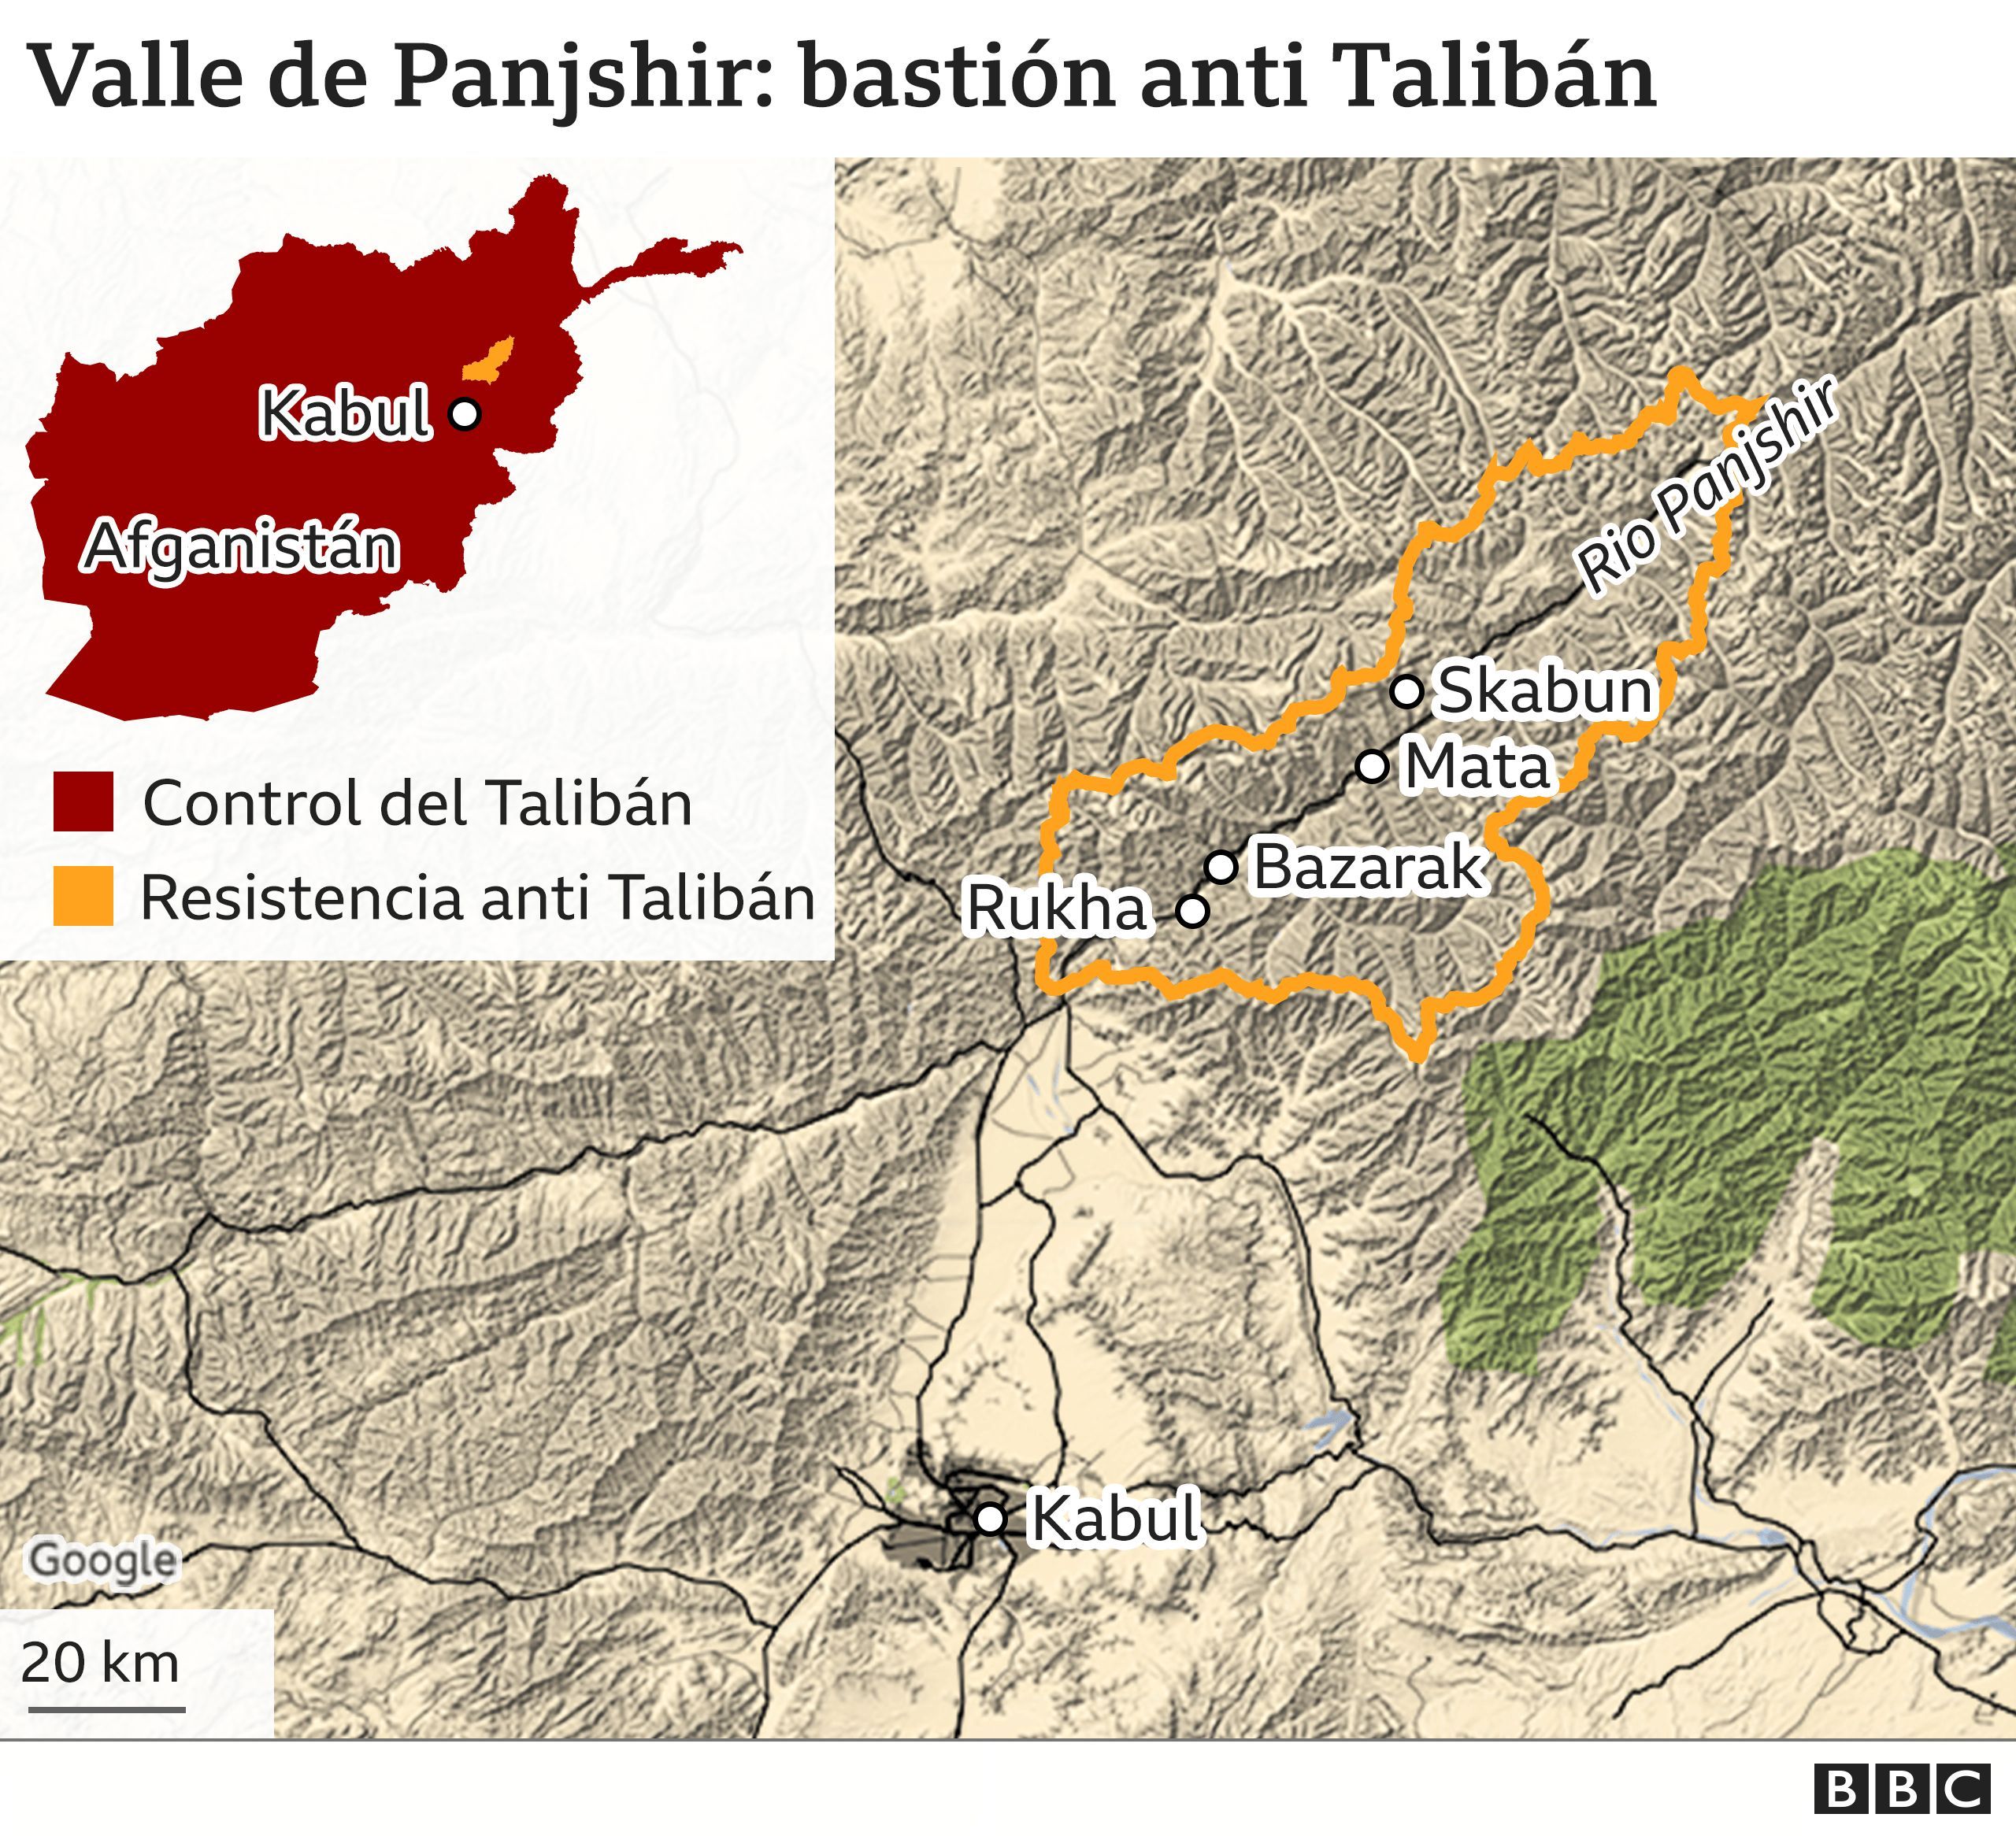 Mapa de la región del valle de Panjshir